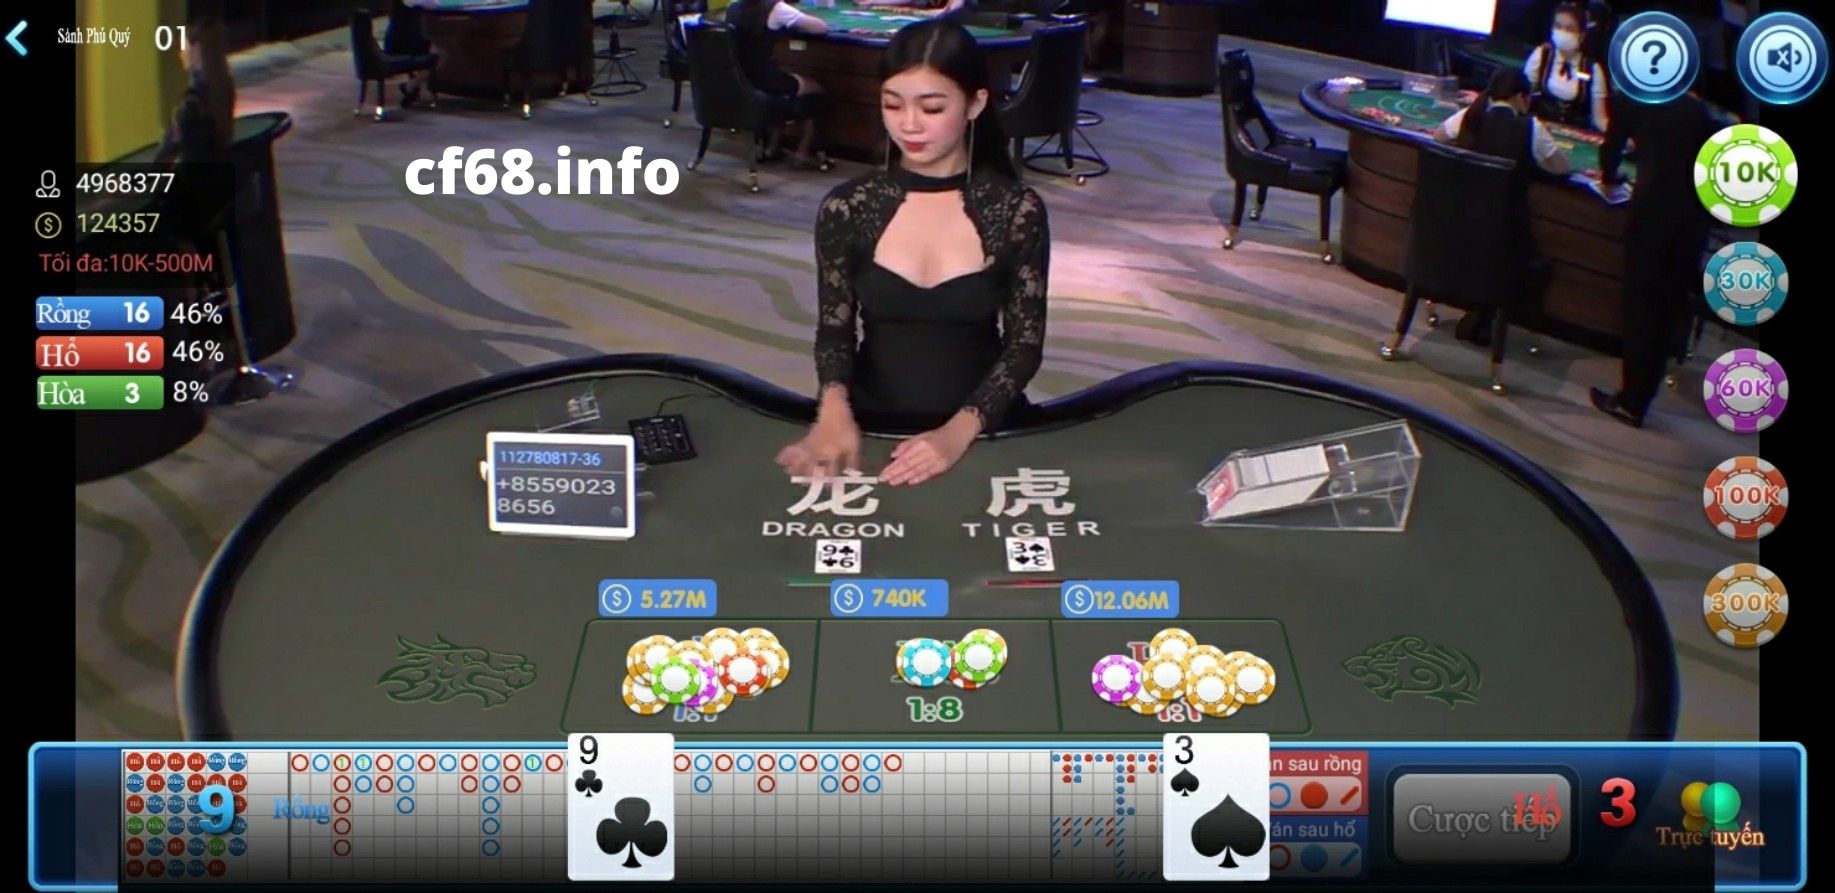 sảnh game live casino CF68, game live casino CF68